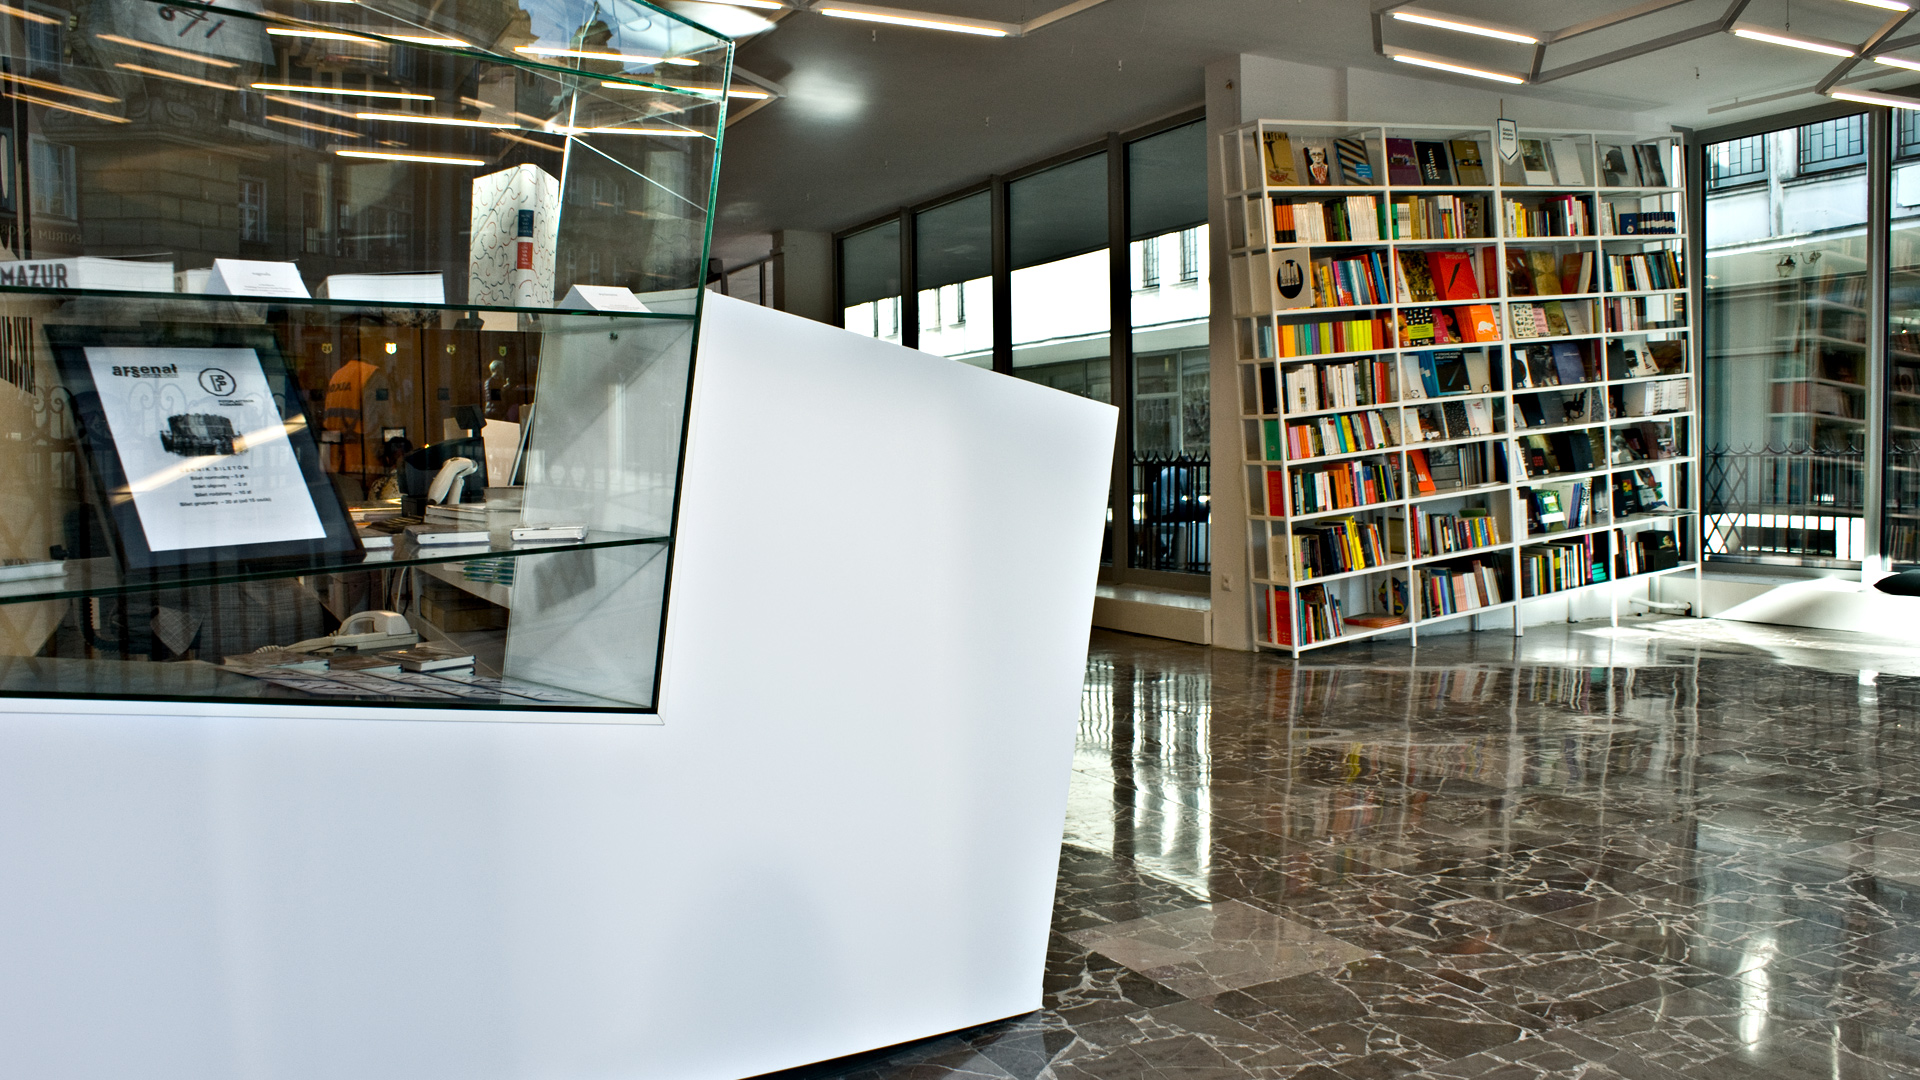 Wielofunkcyjne wnętrze odnowionej Galerii Miejskiej pozwala aranżować je według potrzeb.